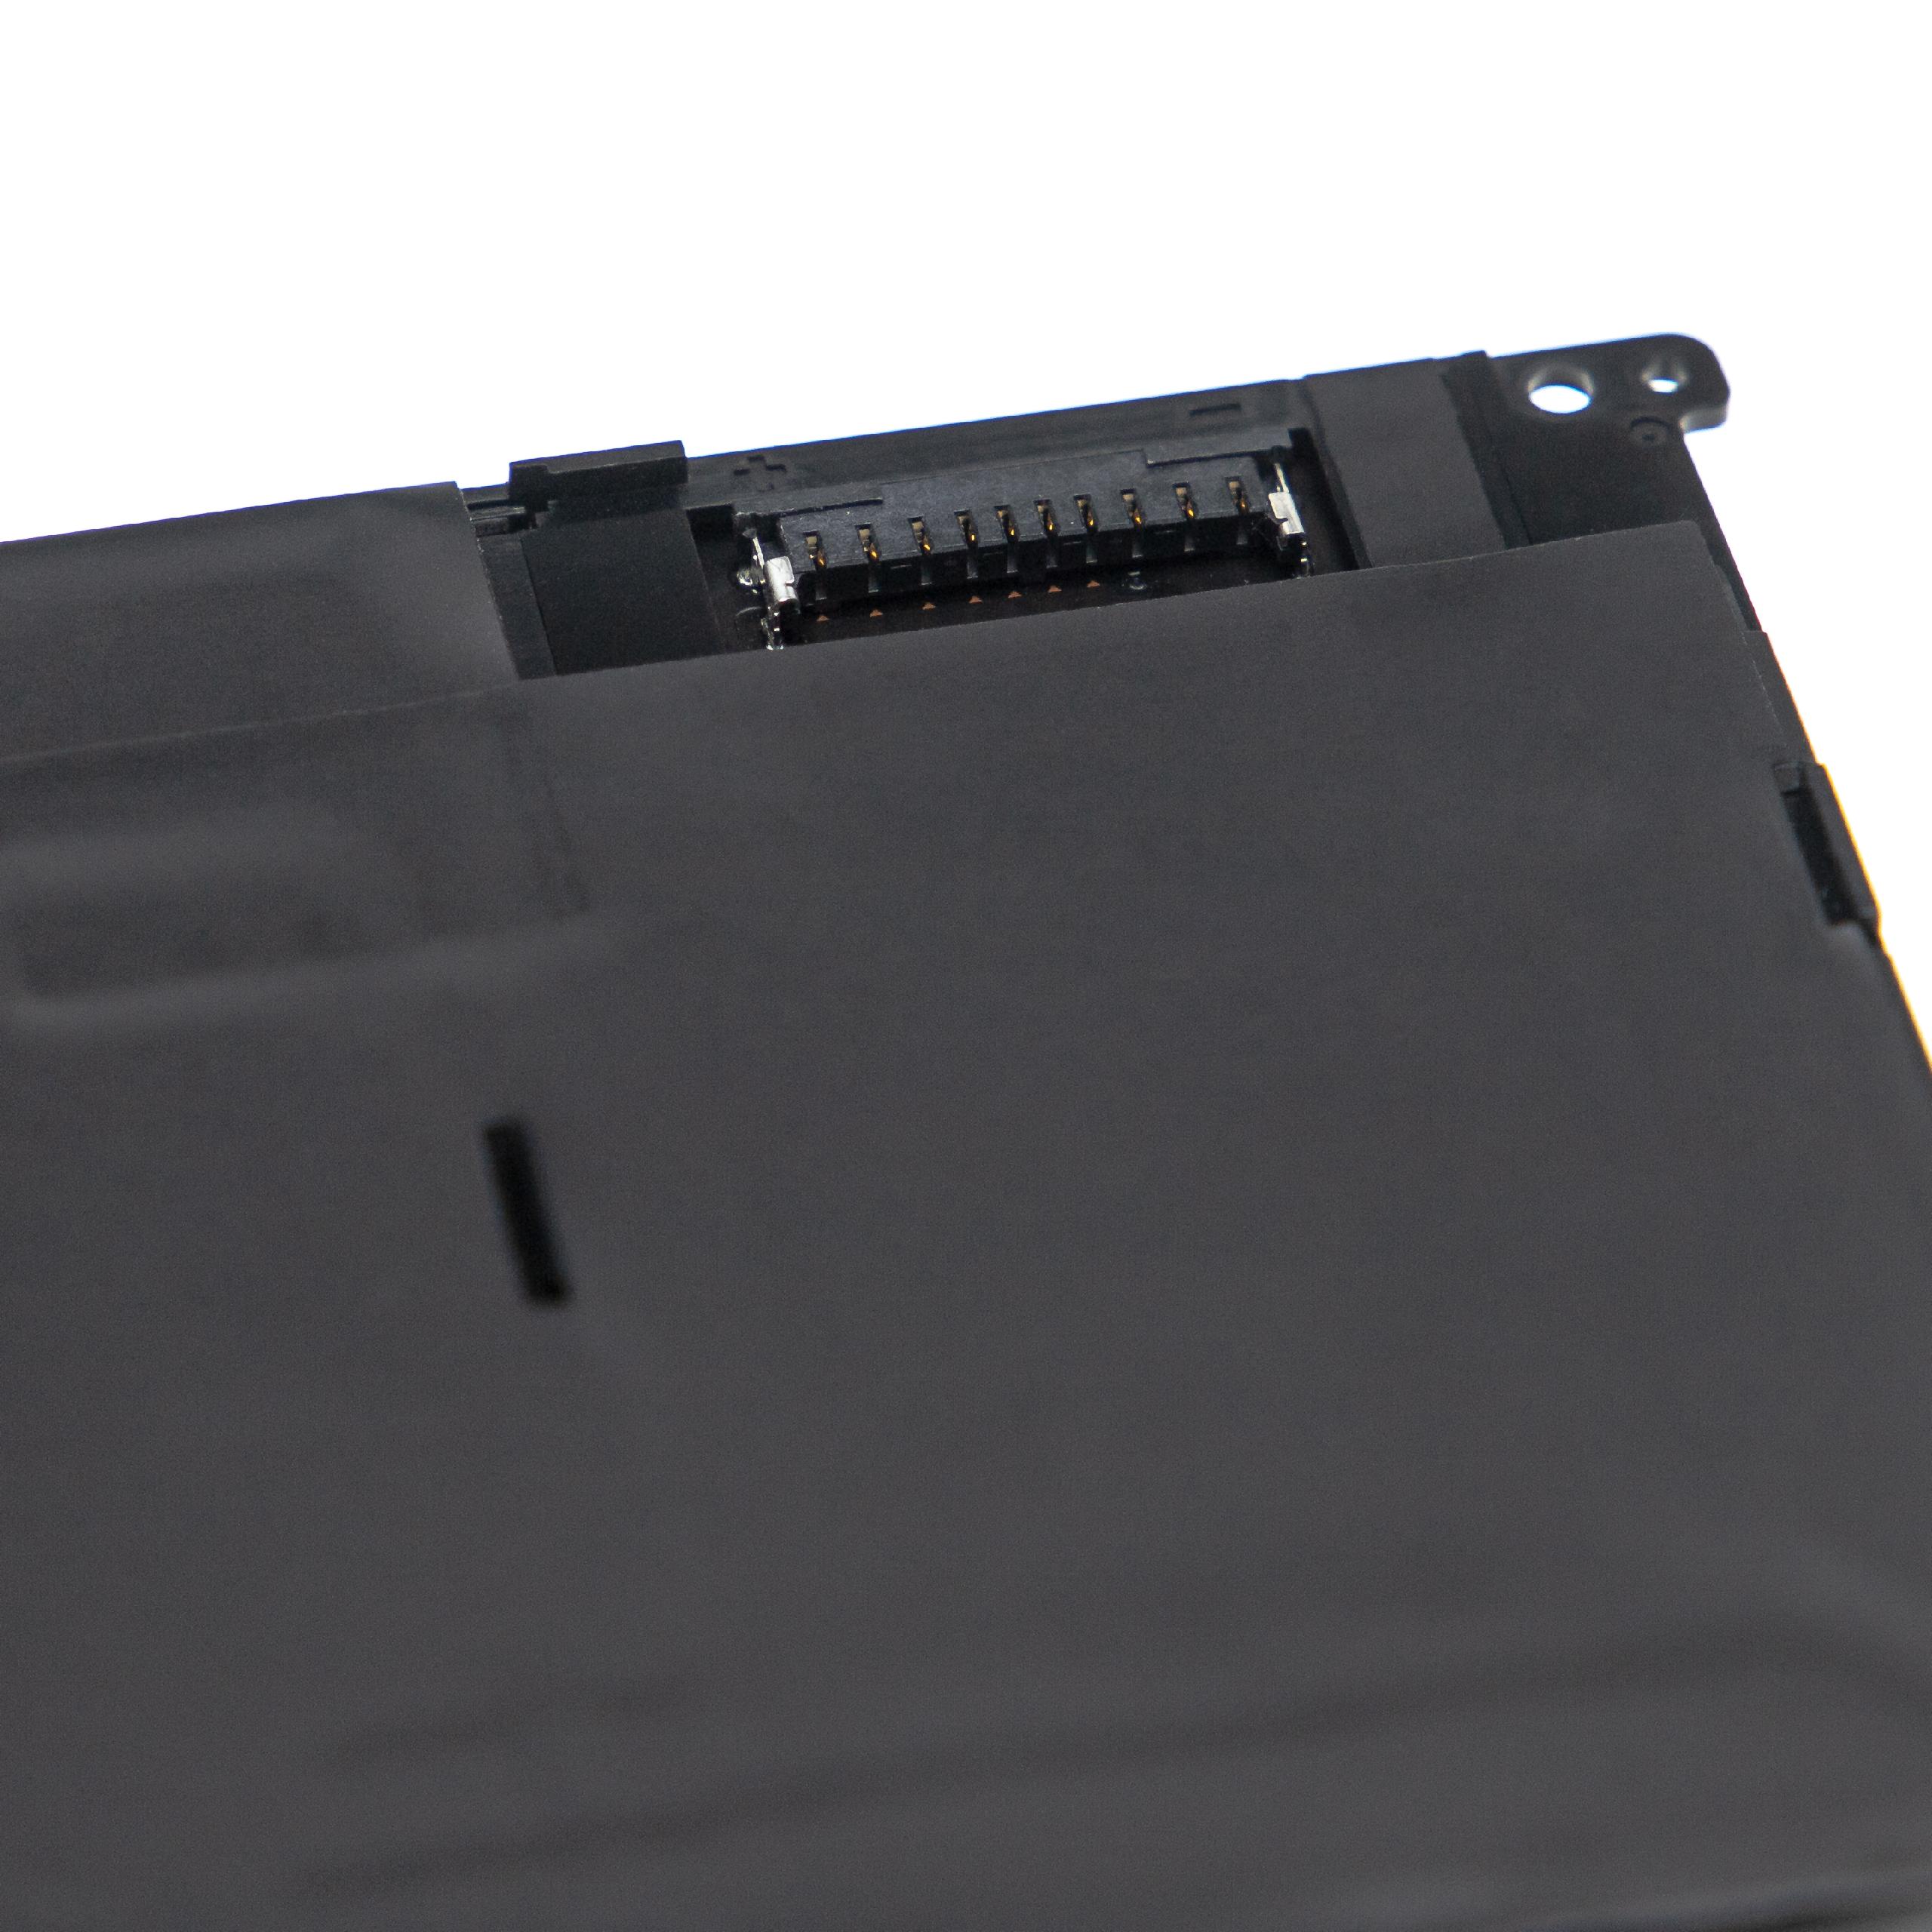 Batterie remplace Dell 70N2F, M59JH, 69KF2 pour ordinateur portable - 7000mAh 11,4V Li-polymère